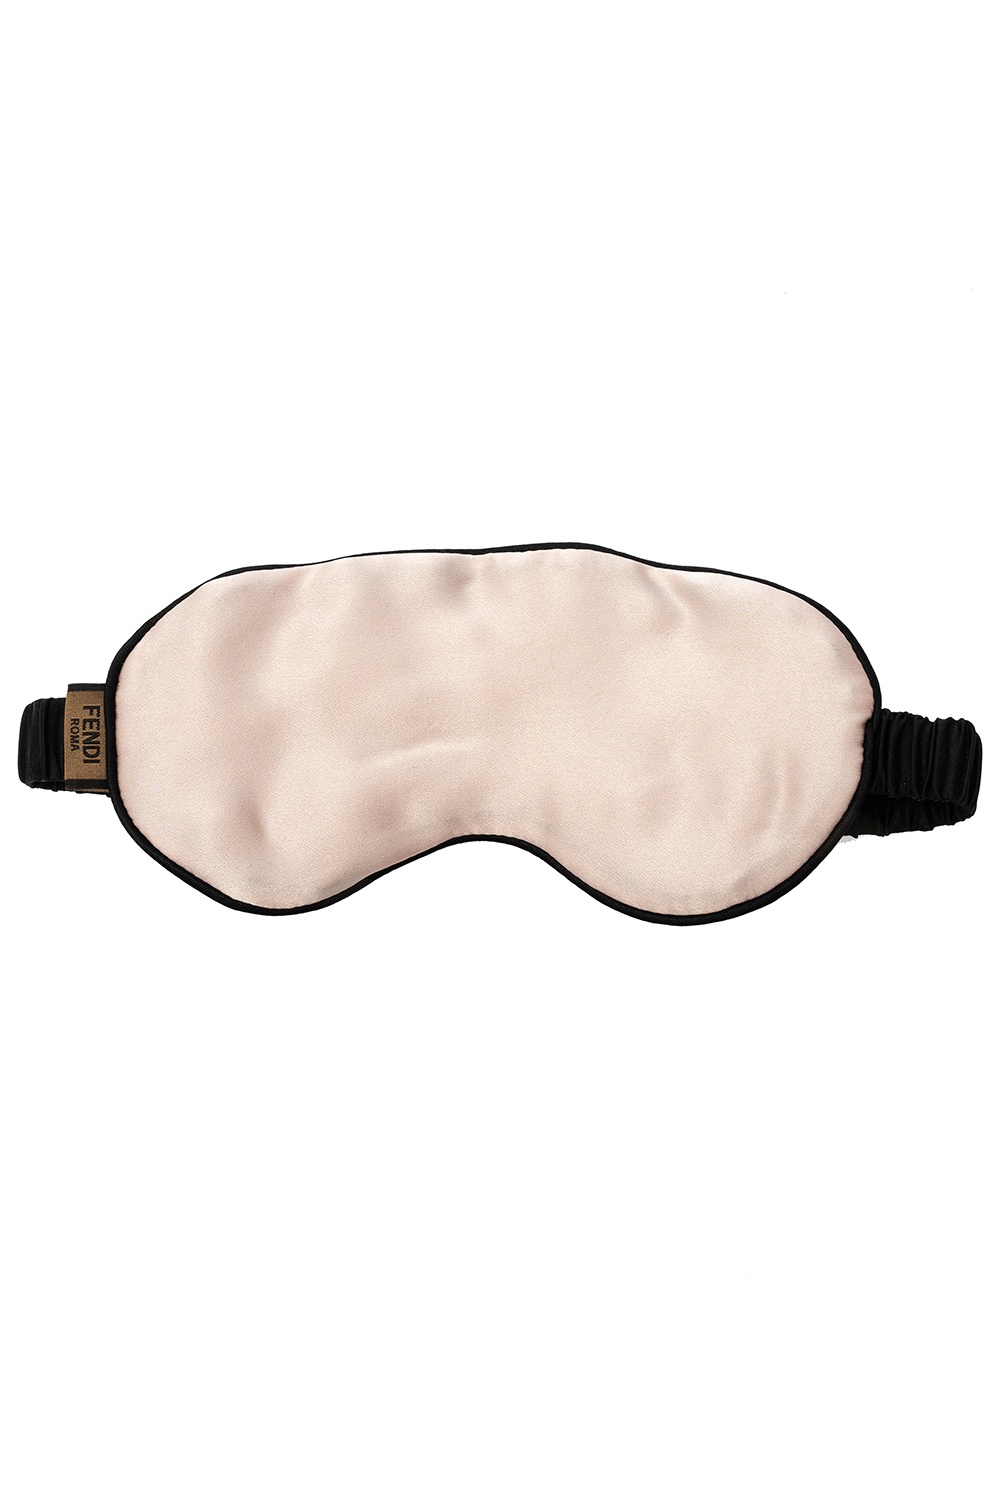 Satin Eye Mask Sleep Mask - Red Blindfold Satin Eye Mask - Eye Blindfold  Sleep Mask 59 Inch (59)